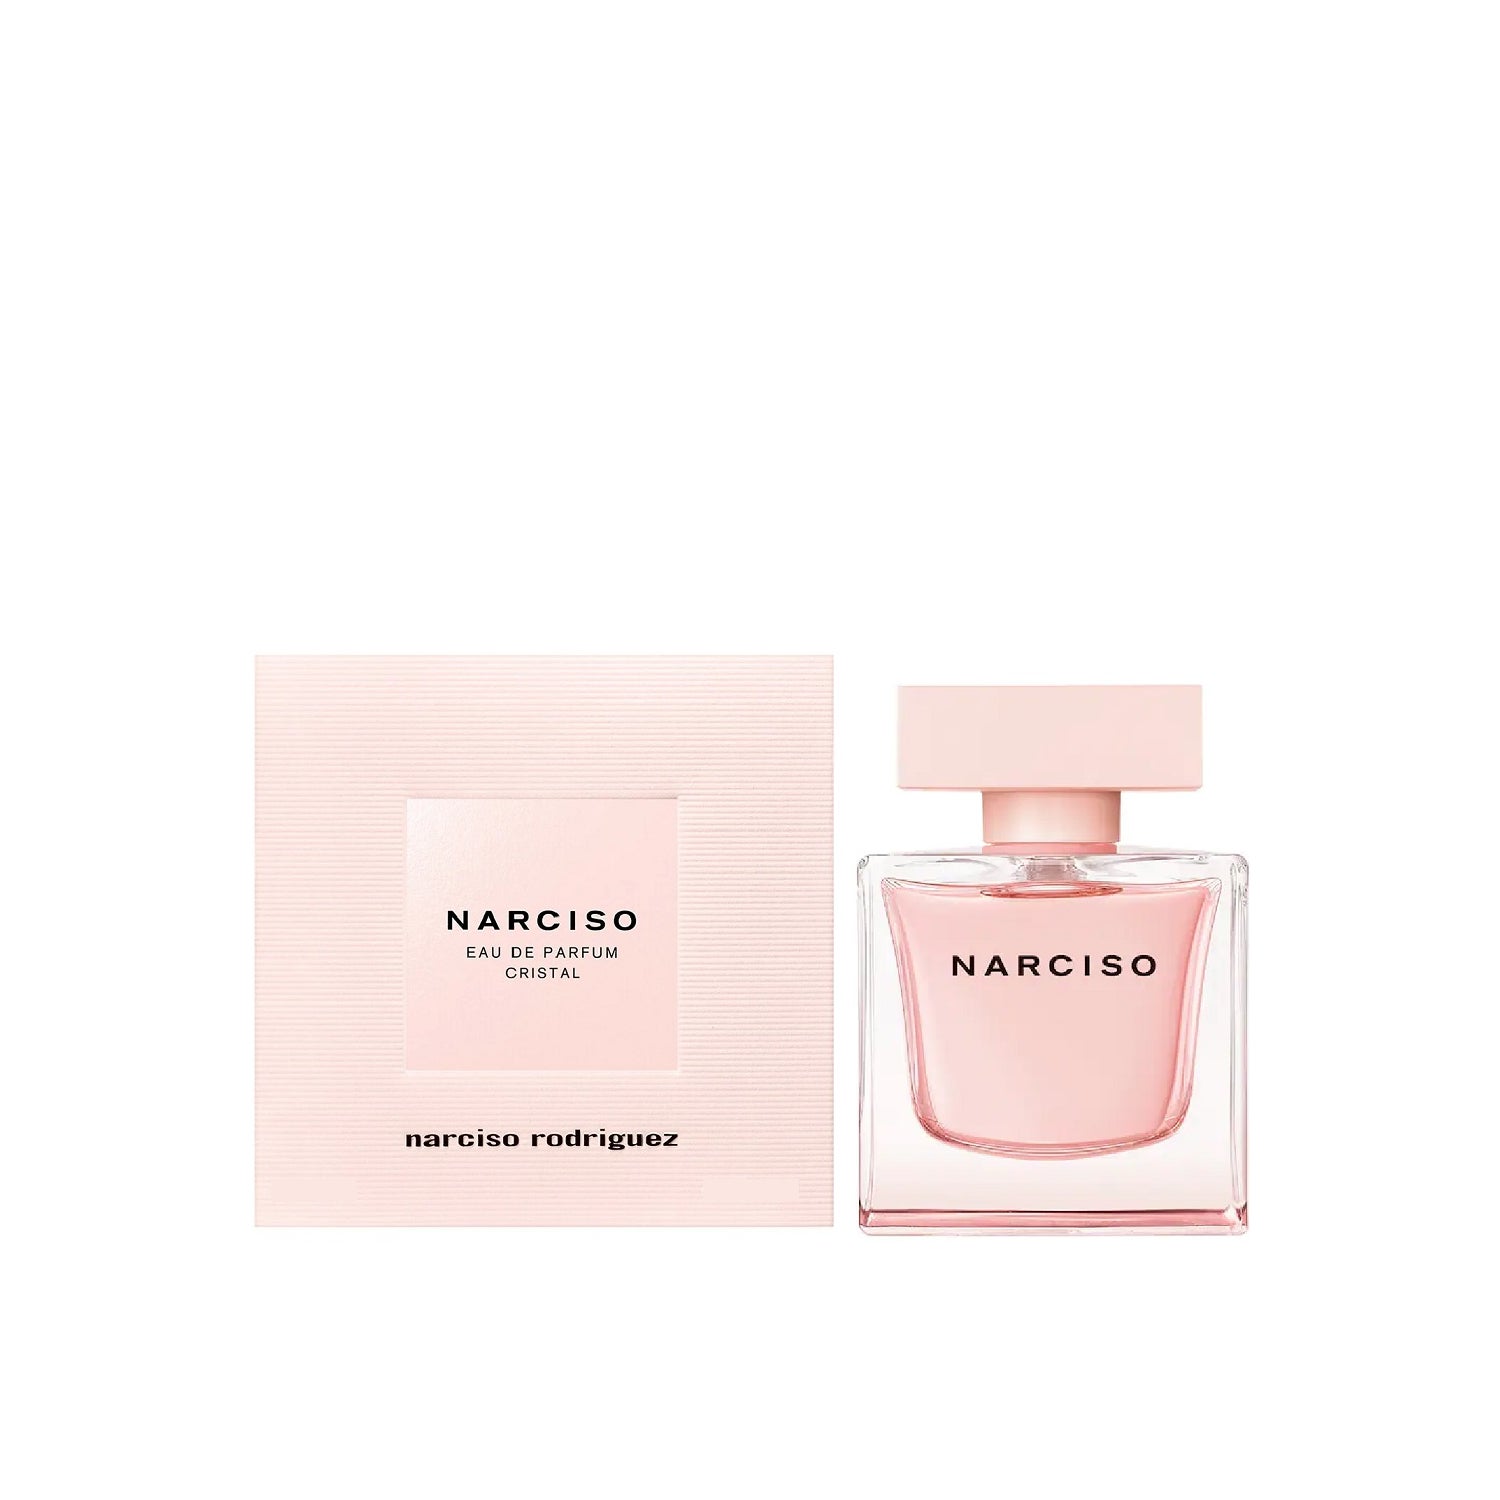 telegrama George Hanbury Asistencia Narciso Rodriguez Narciso Eau de Parfum Cristal 50ml | PromoFarma